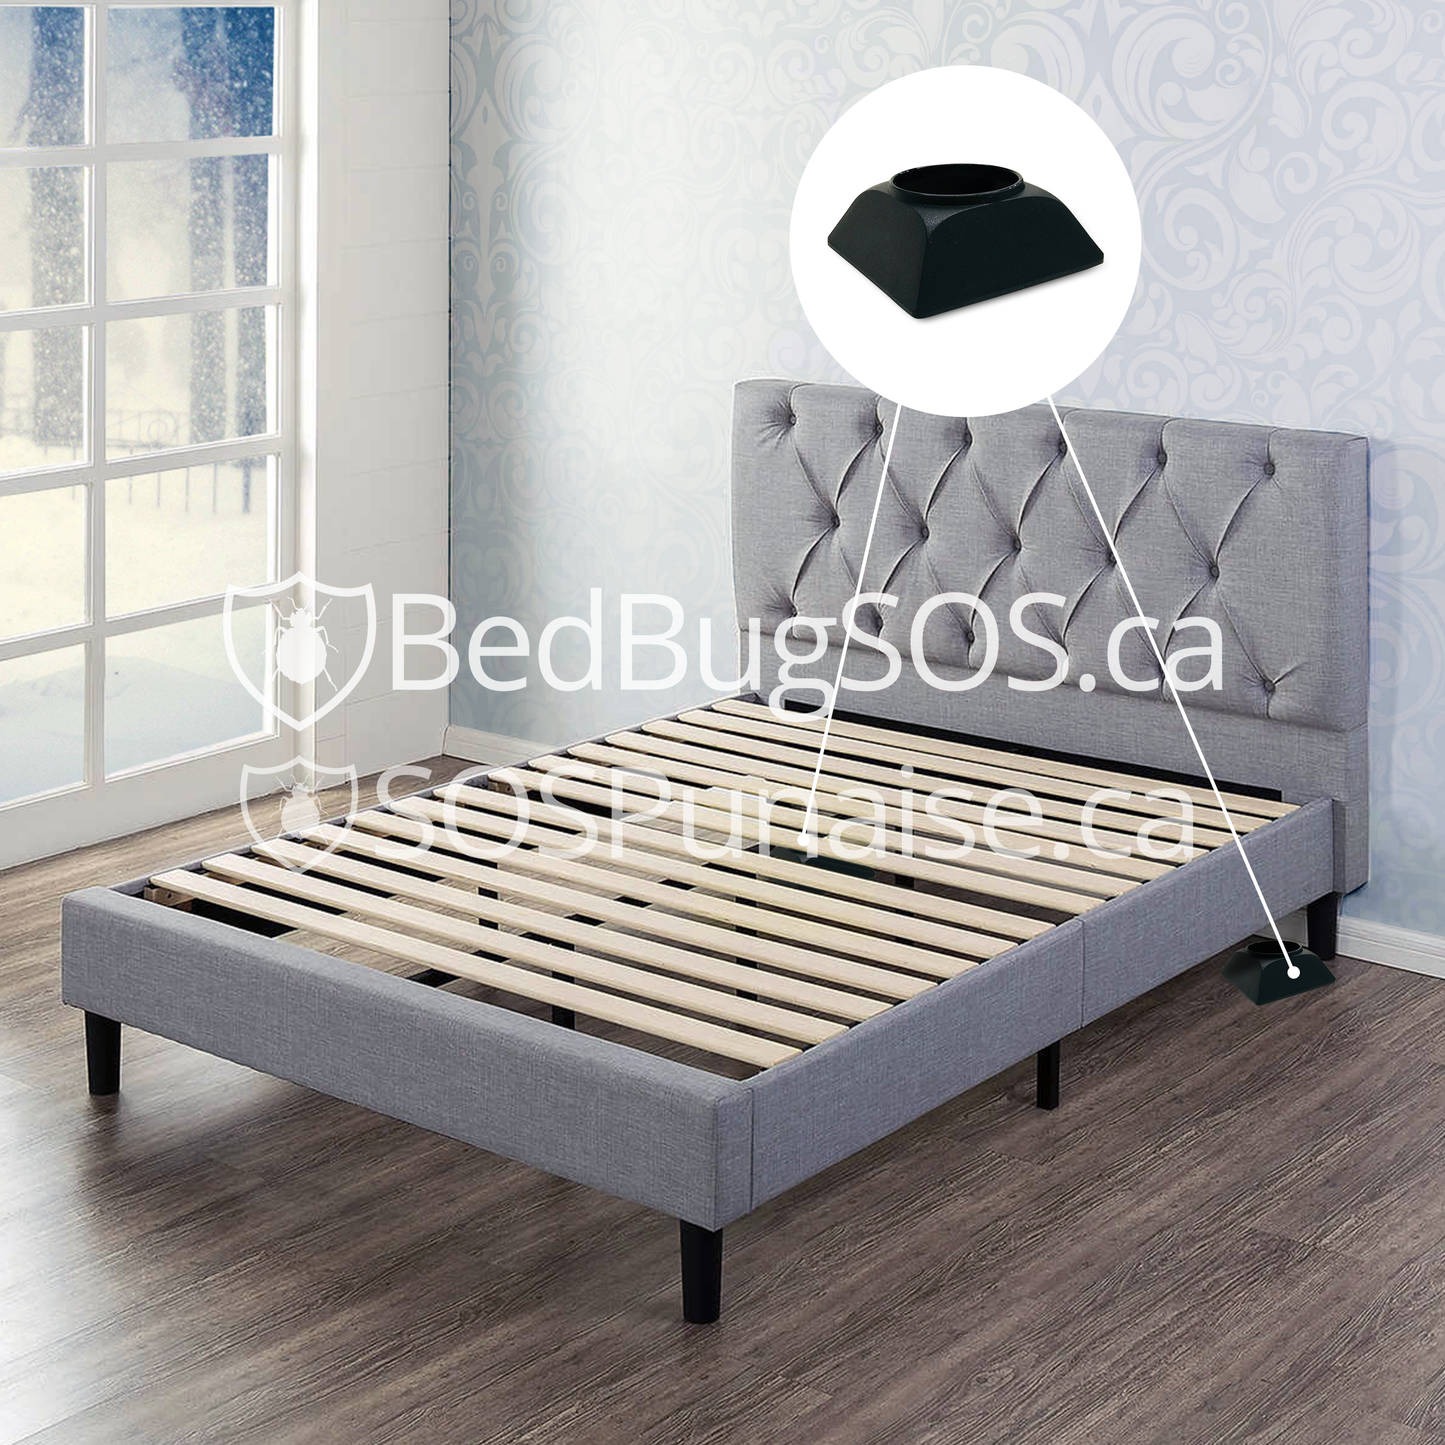 SenSci Volcano Bed Bug Detector - Bed Bug SOS